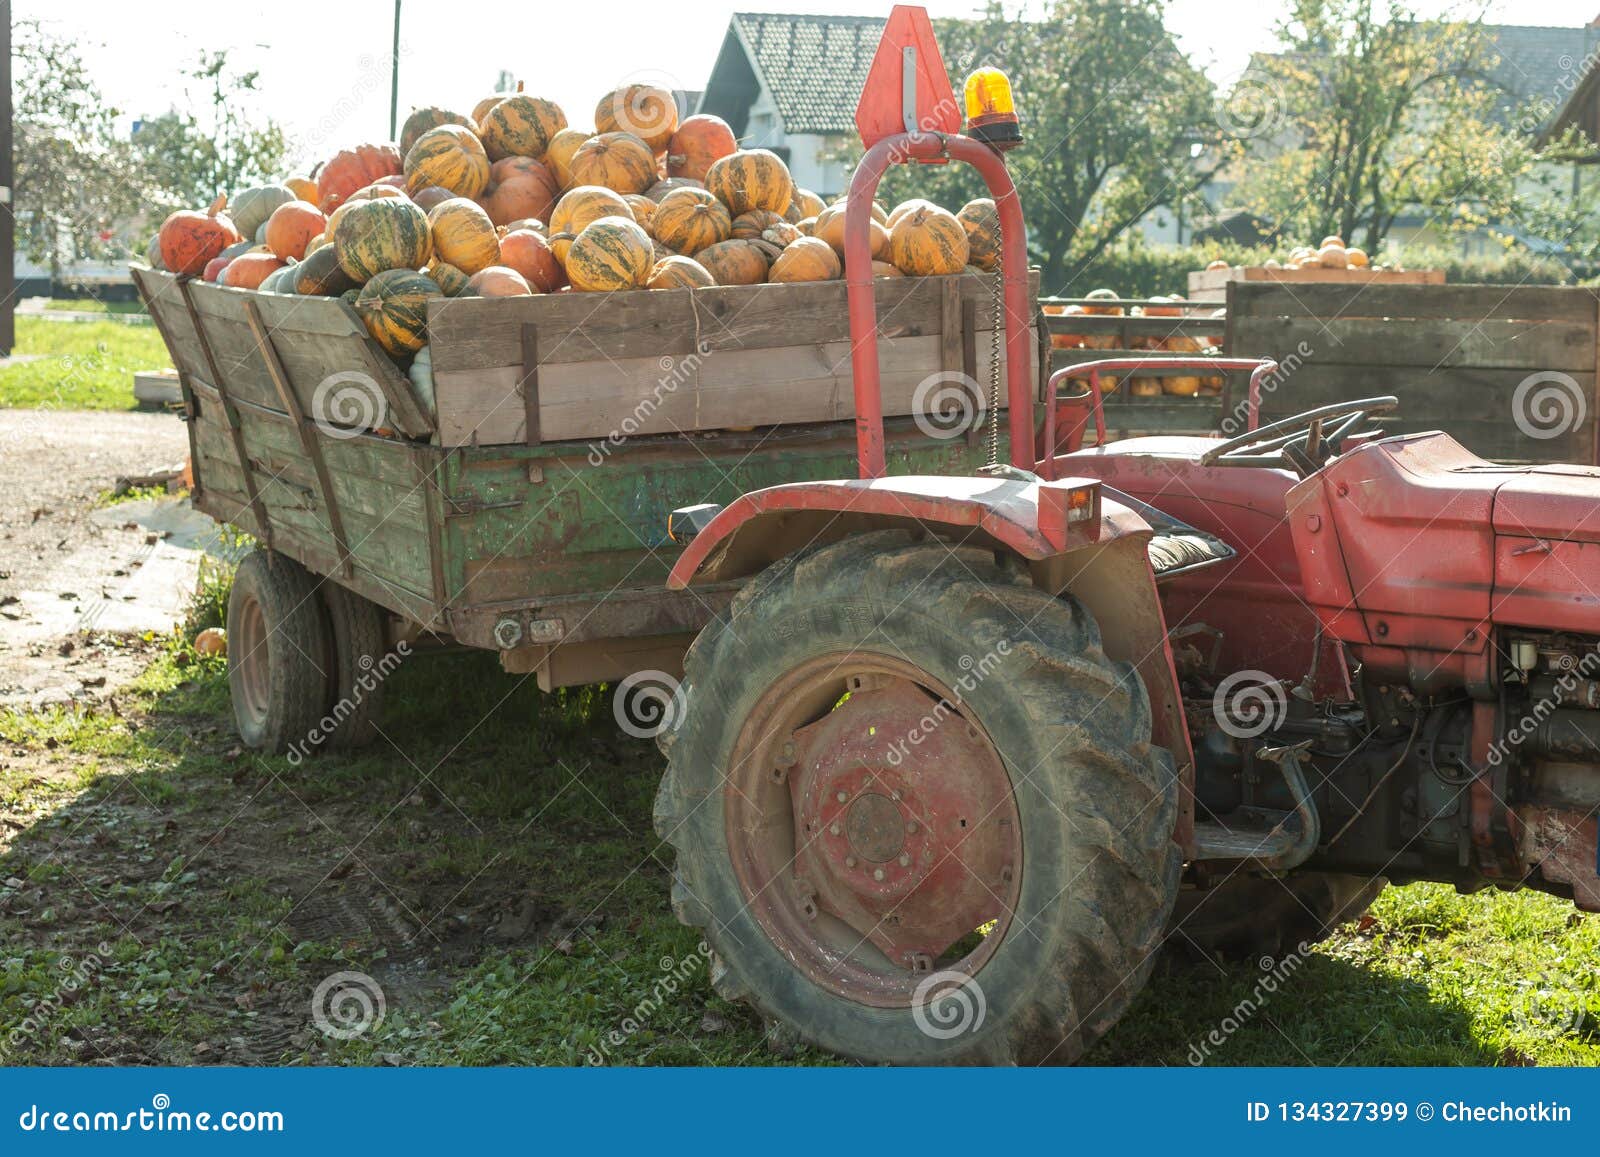 pumpkin hrvest on the tactor in village